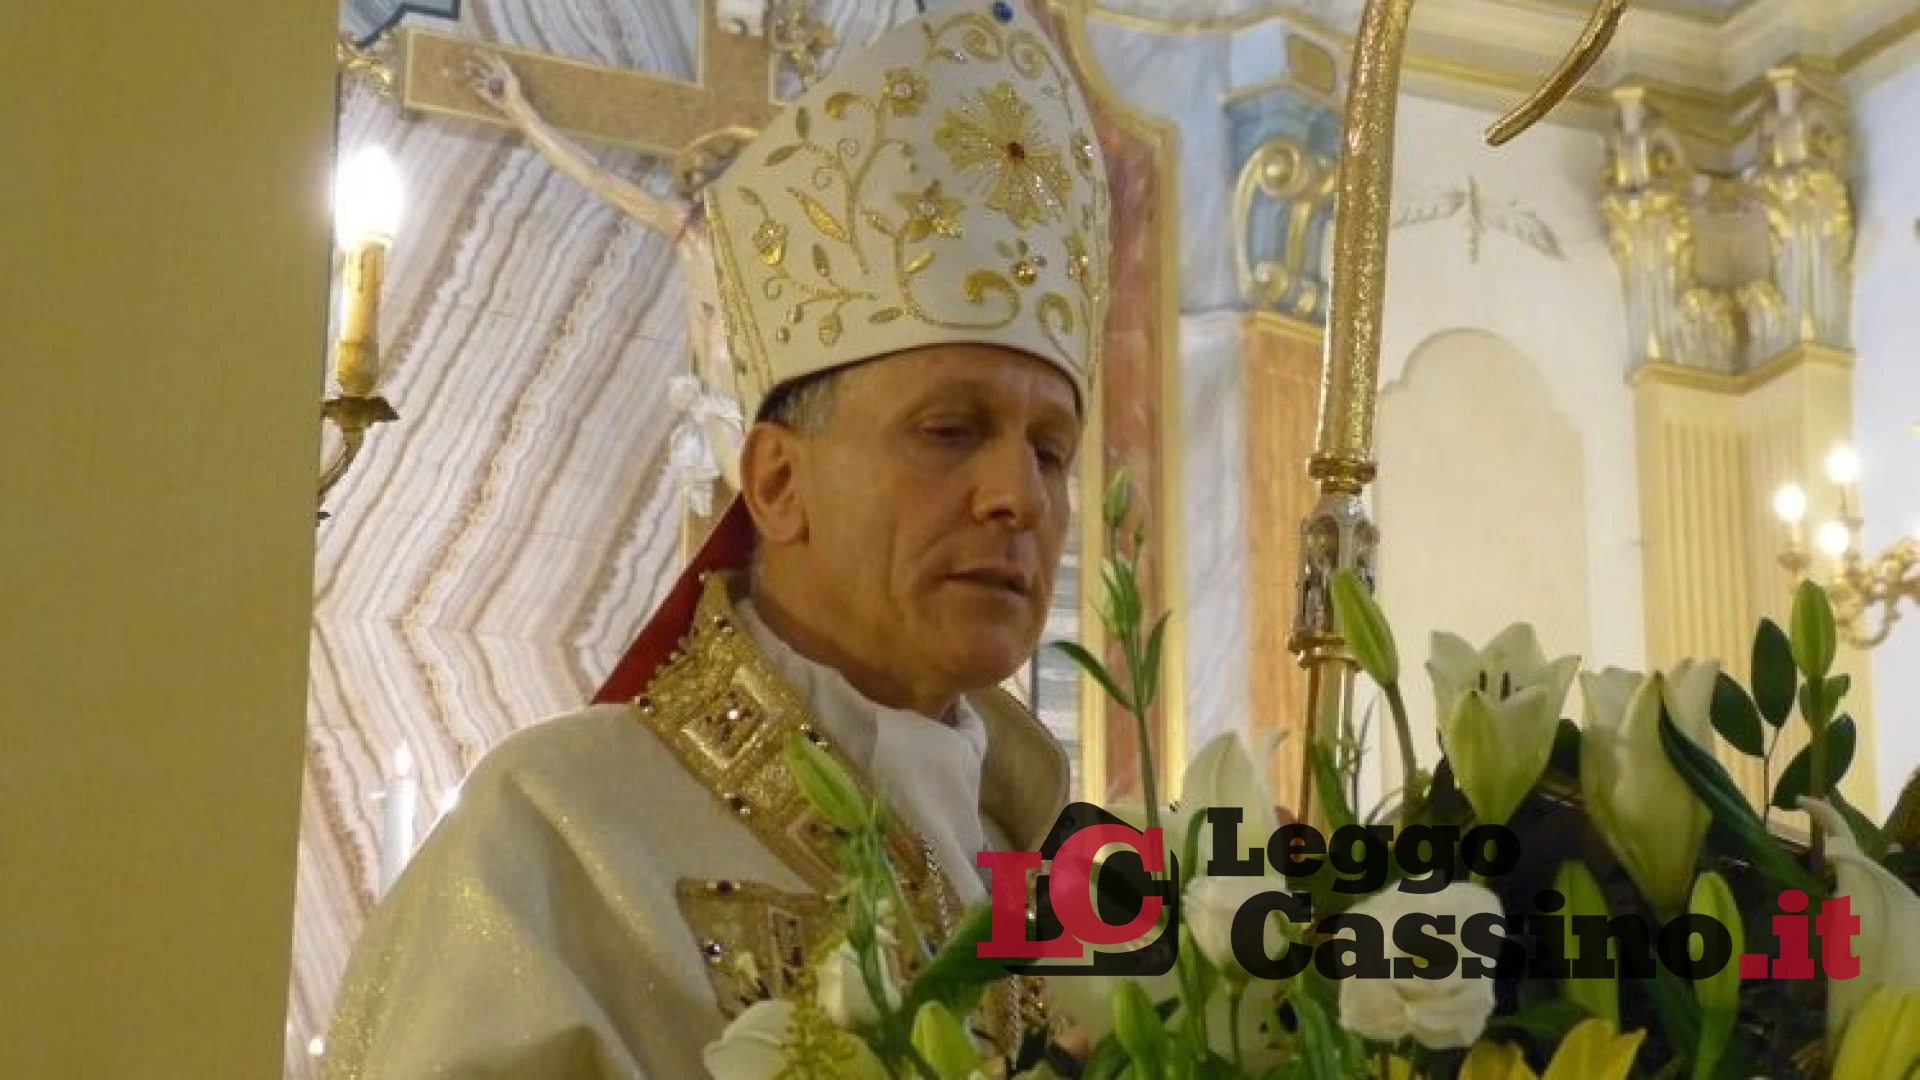 Il vescovo: "Una giornata di digiuno per la Pace"